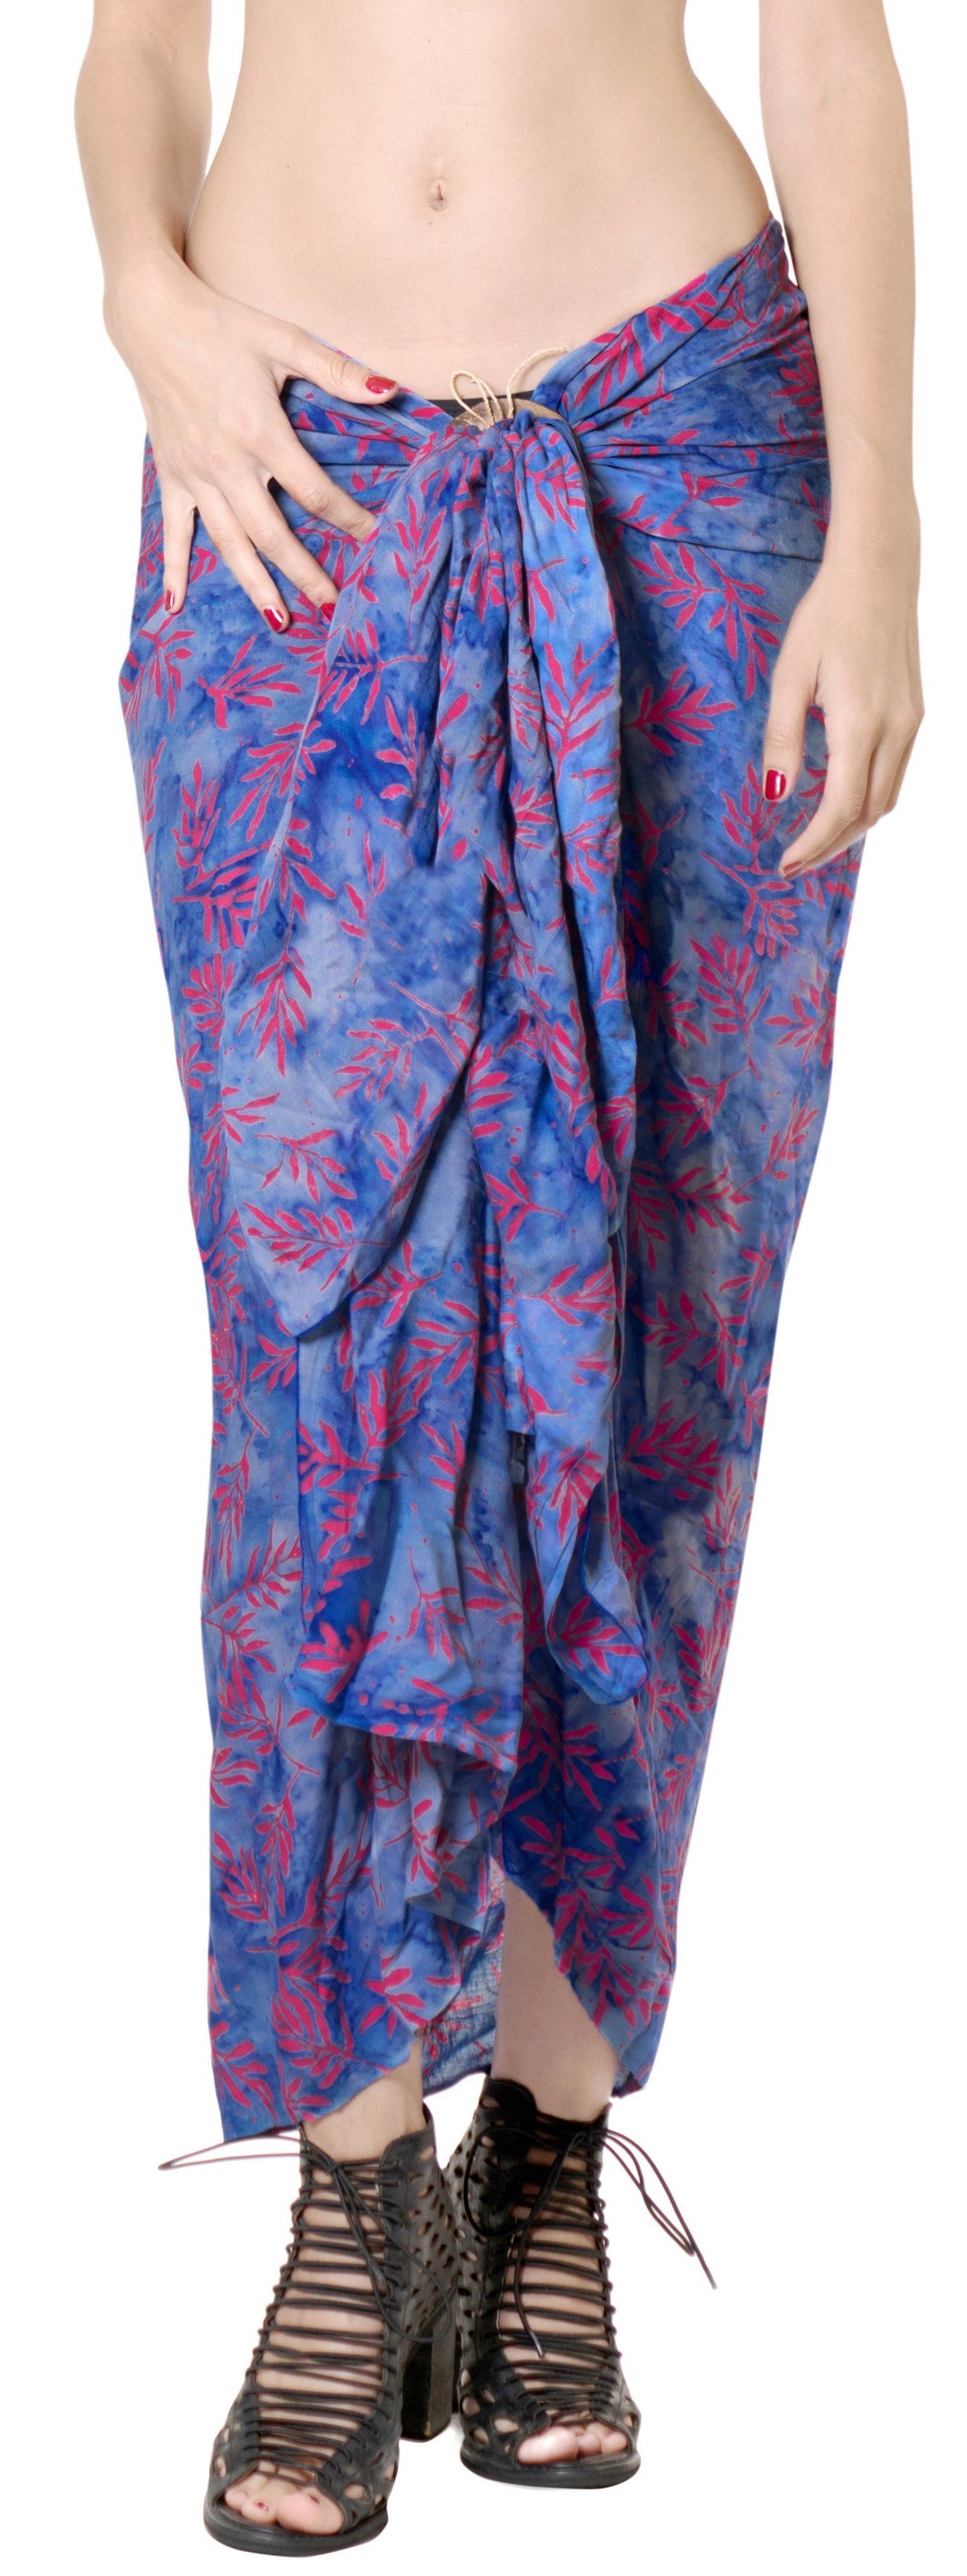 la-leela-rayon-bikini-cover-up-sarong-bikini-cover-up-printed-78x43-blue_4419